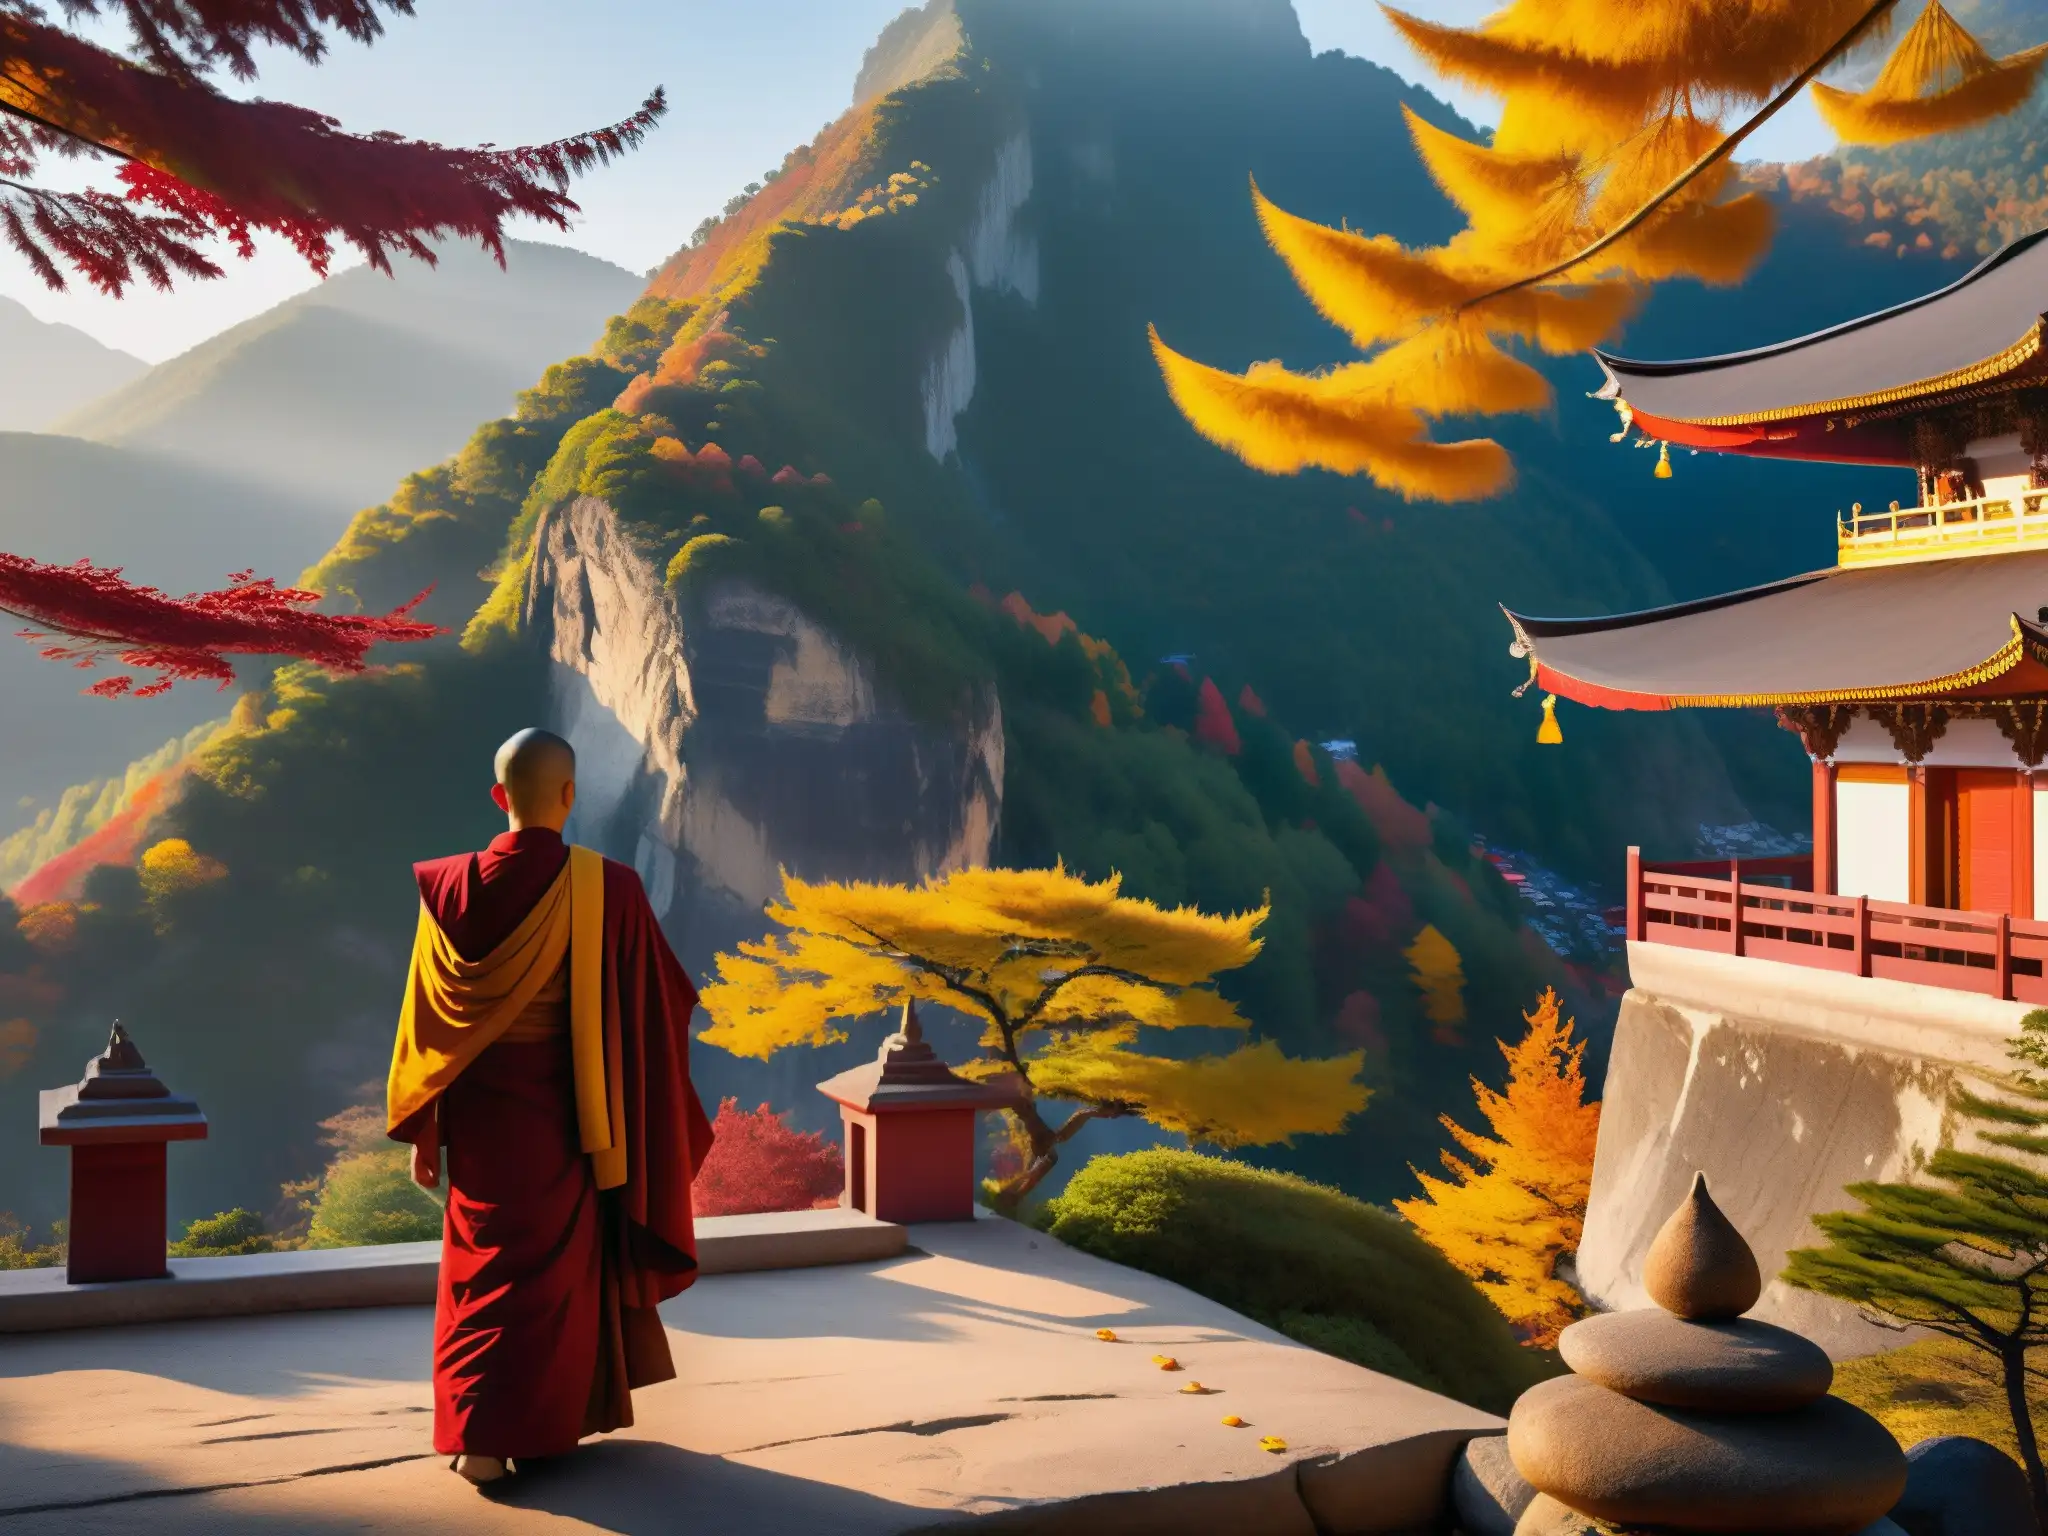 Escena mística al amanecer con temple budista en la montaña, monjes meditando y colores otoñales